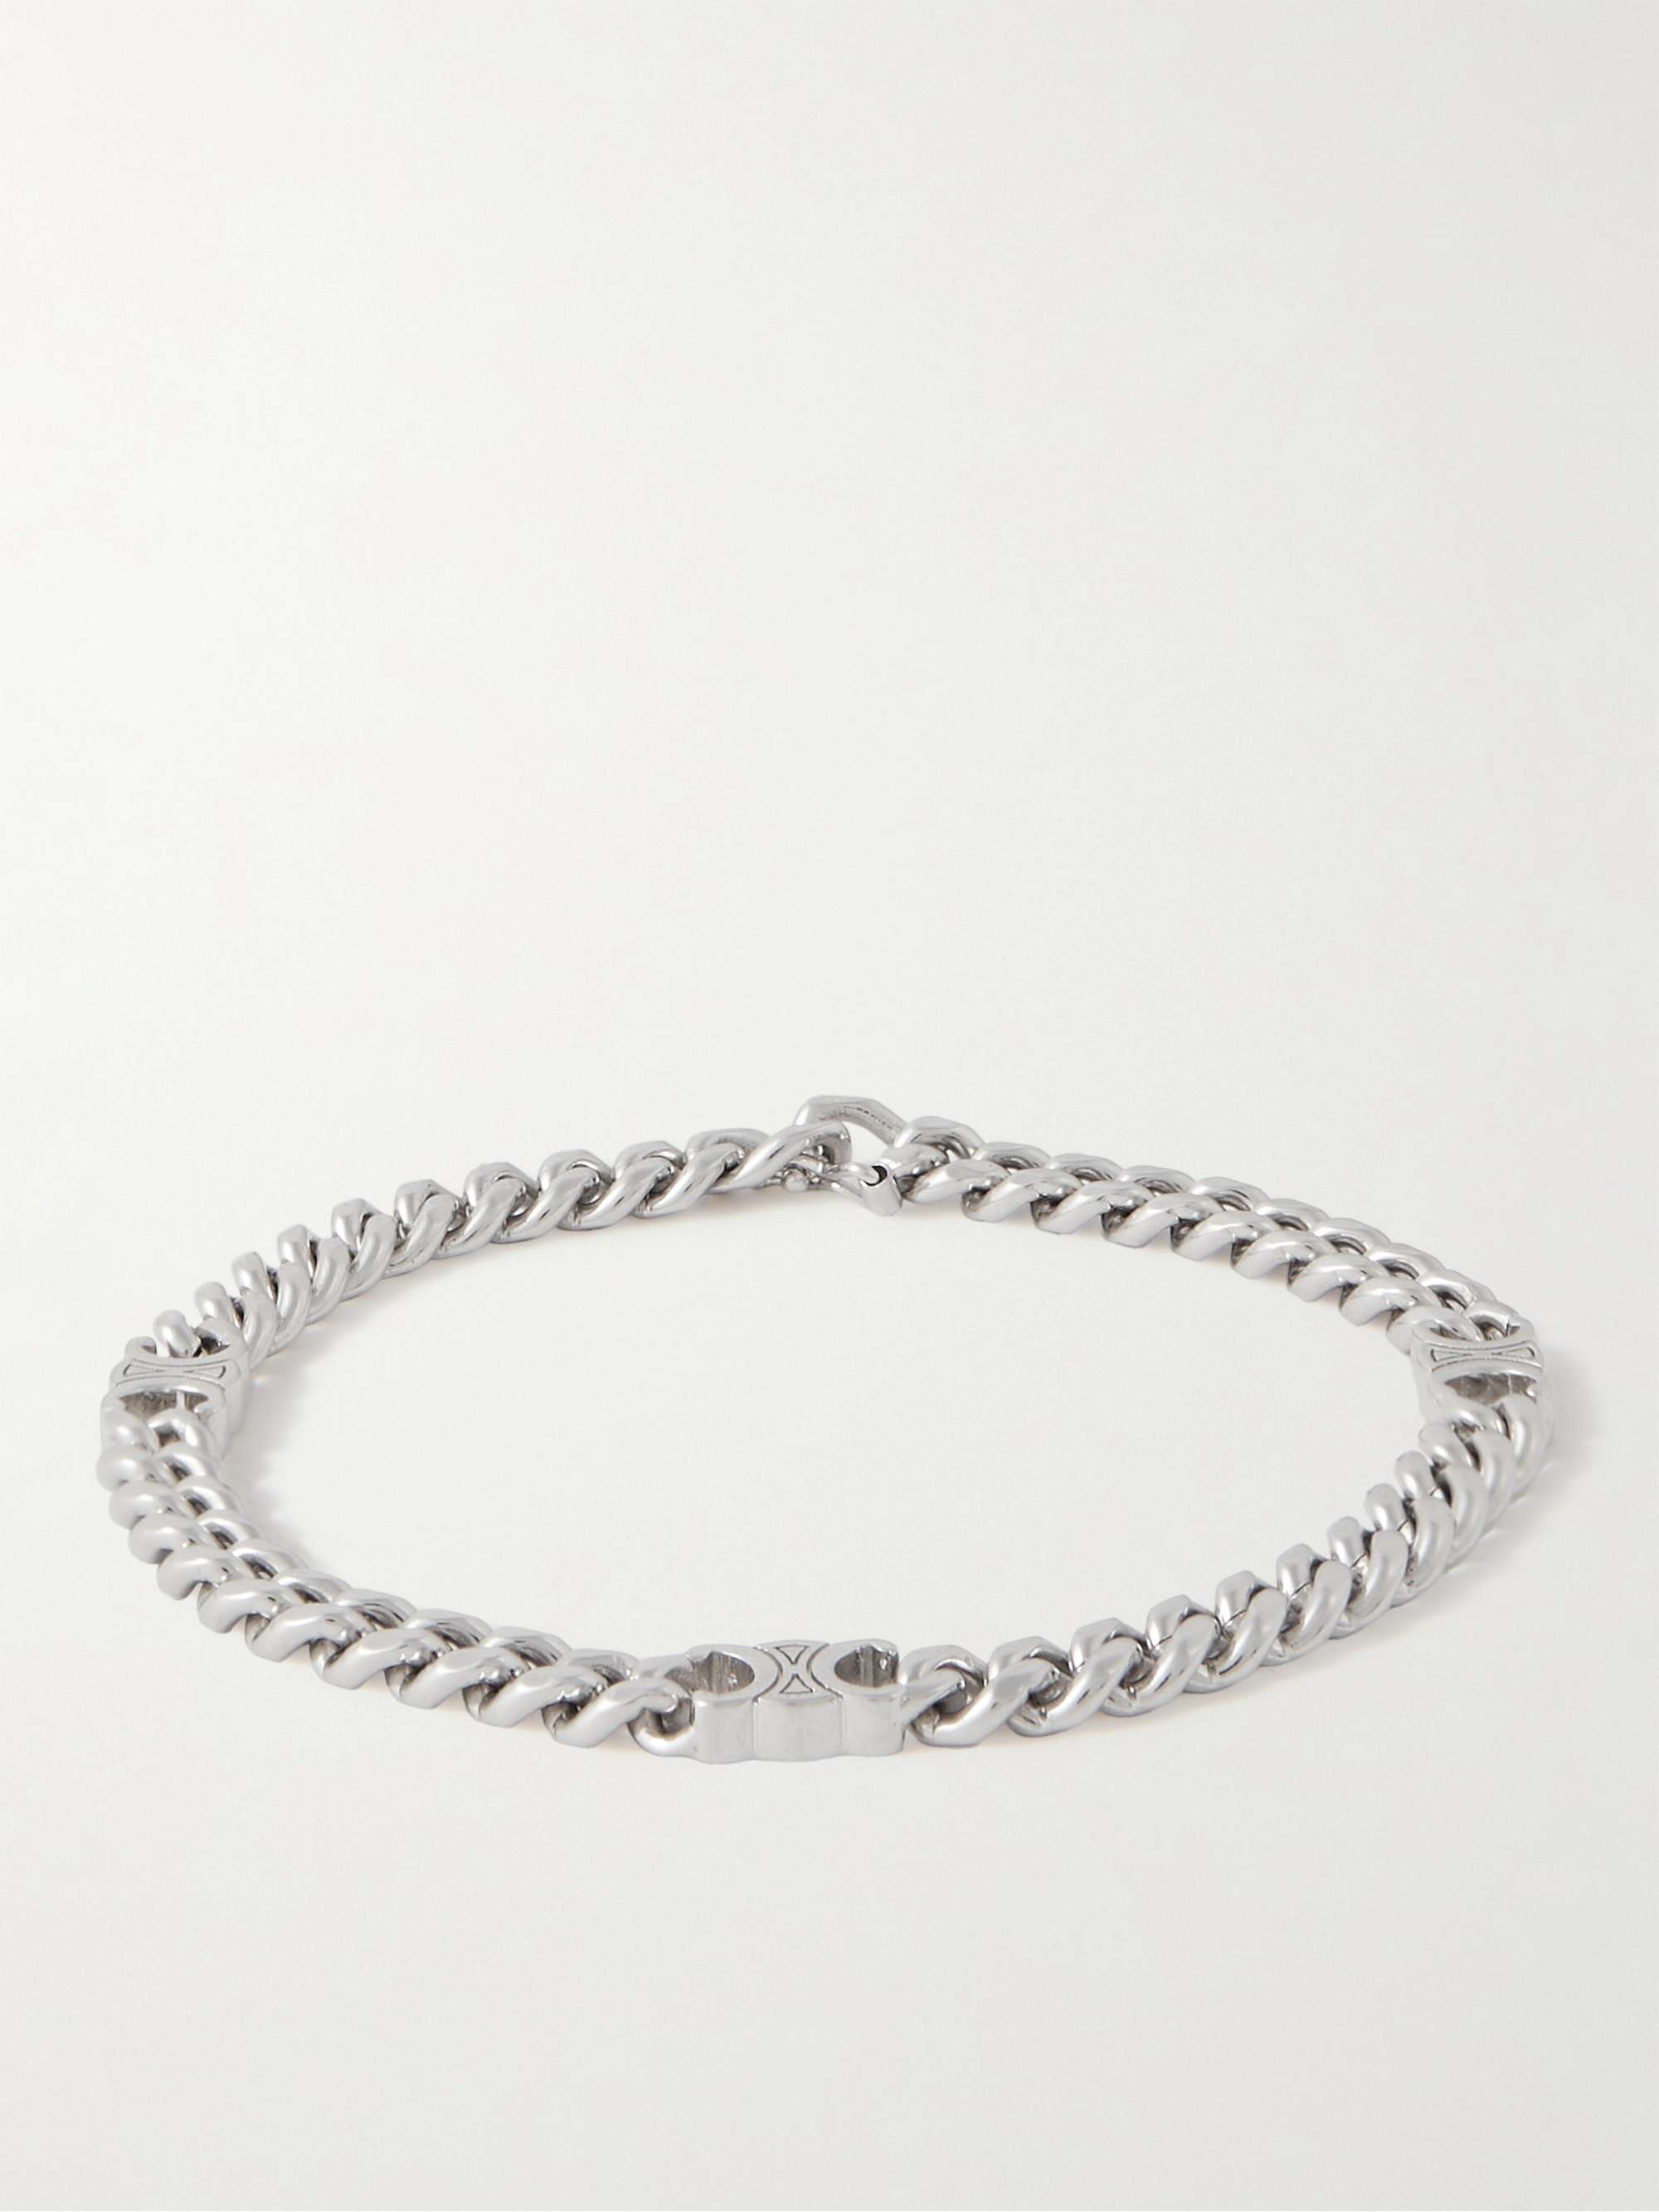 CELINE HOMME Small Rhodium-Plated Chain Bracelet for Men | MR PORTER